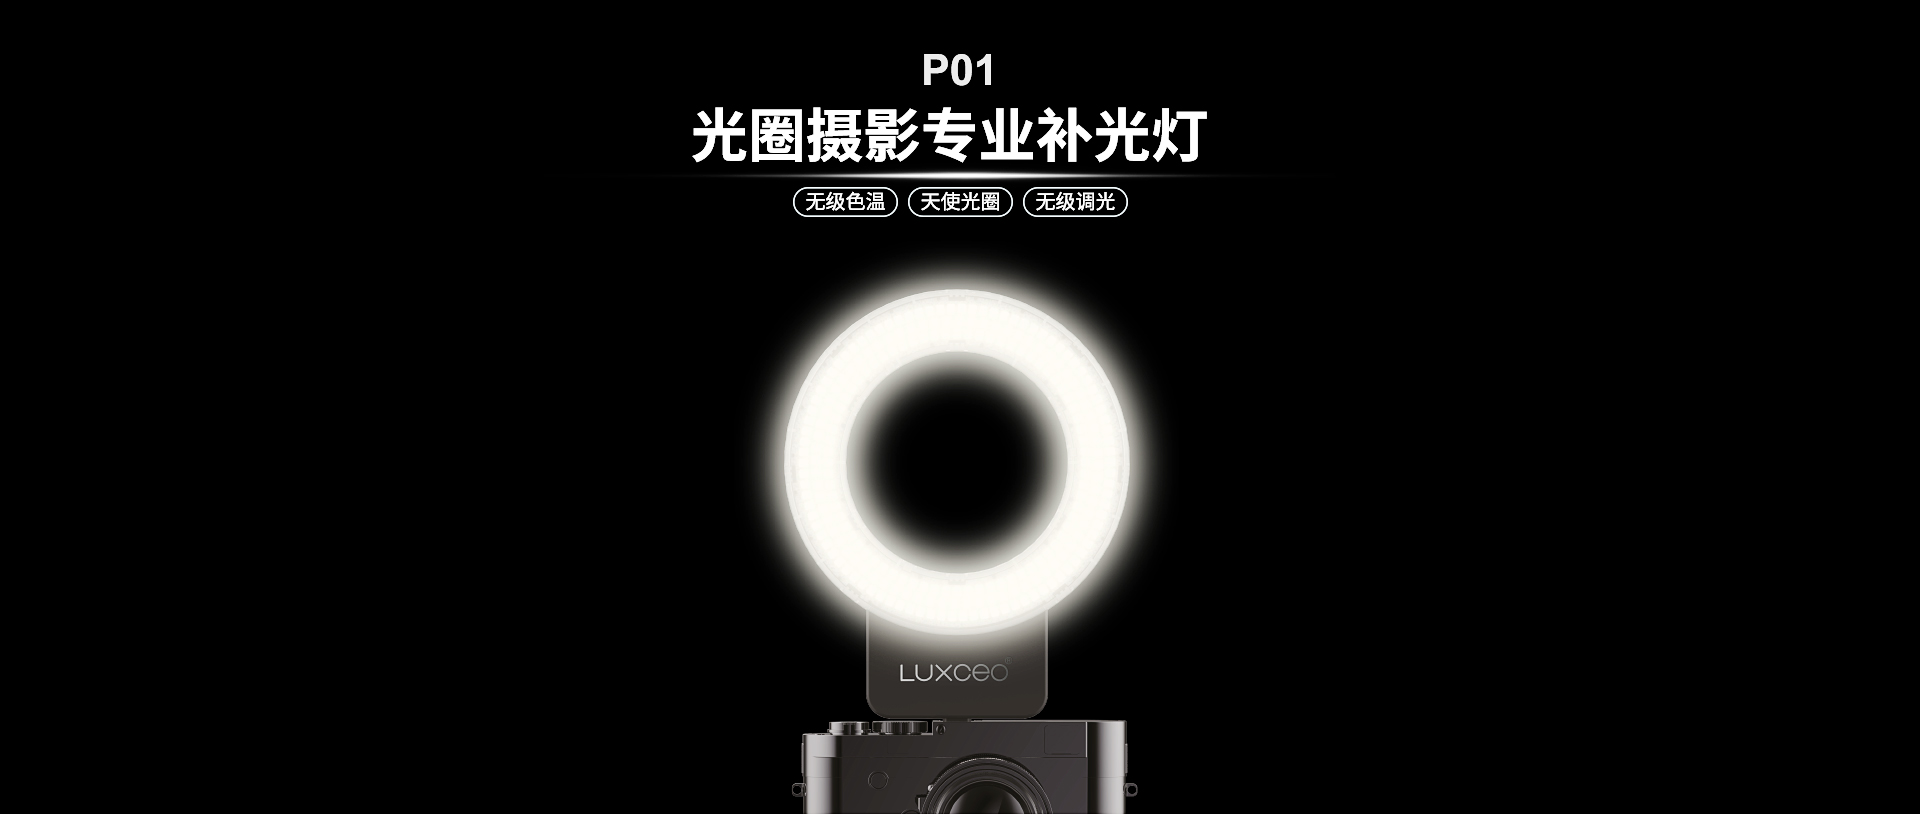 P01-LED环形补光灯